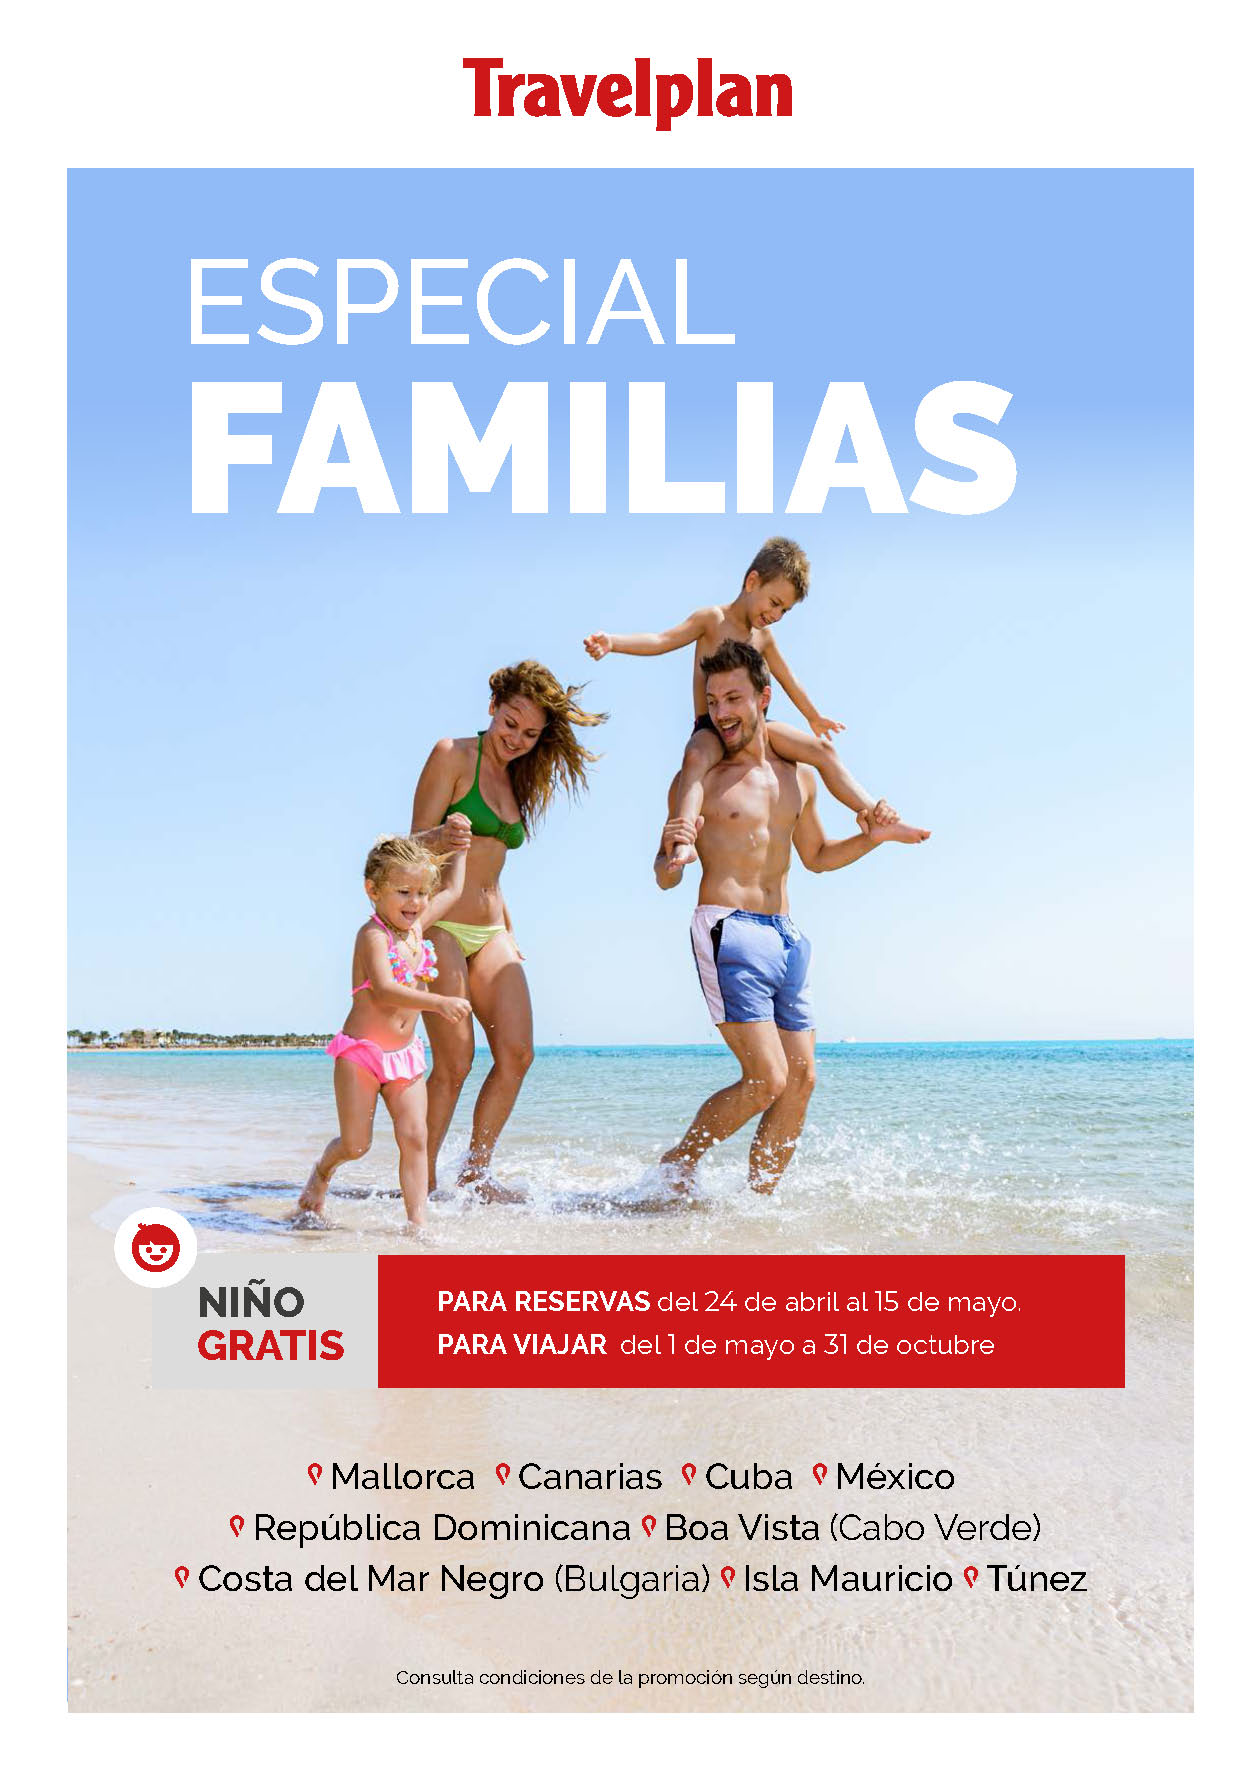 Oferta Travelplan Especial Familias Verano 2023 Vacaciones en Baleares Canarias Caribe Cabo Verde Mauricio Tunez Mar Negro salidas vuelos directos desde Madrid